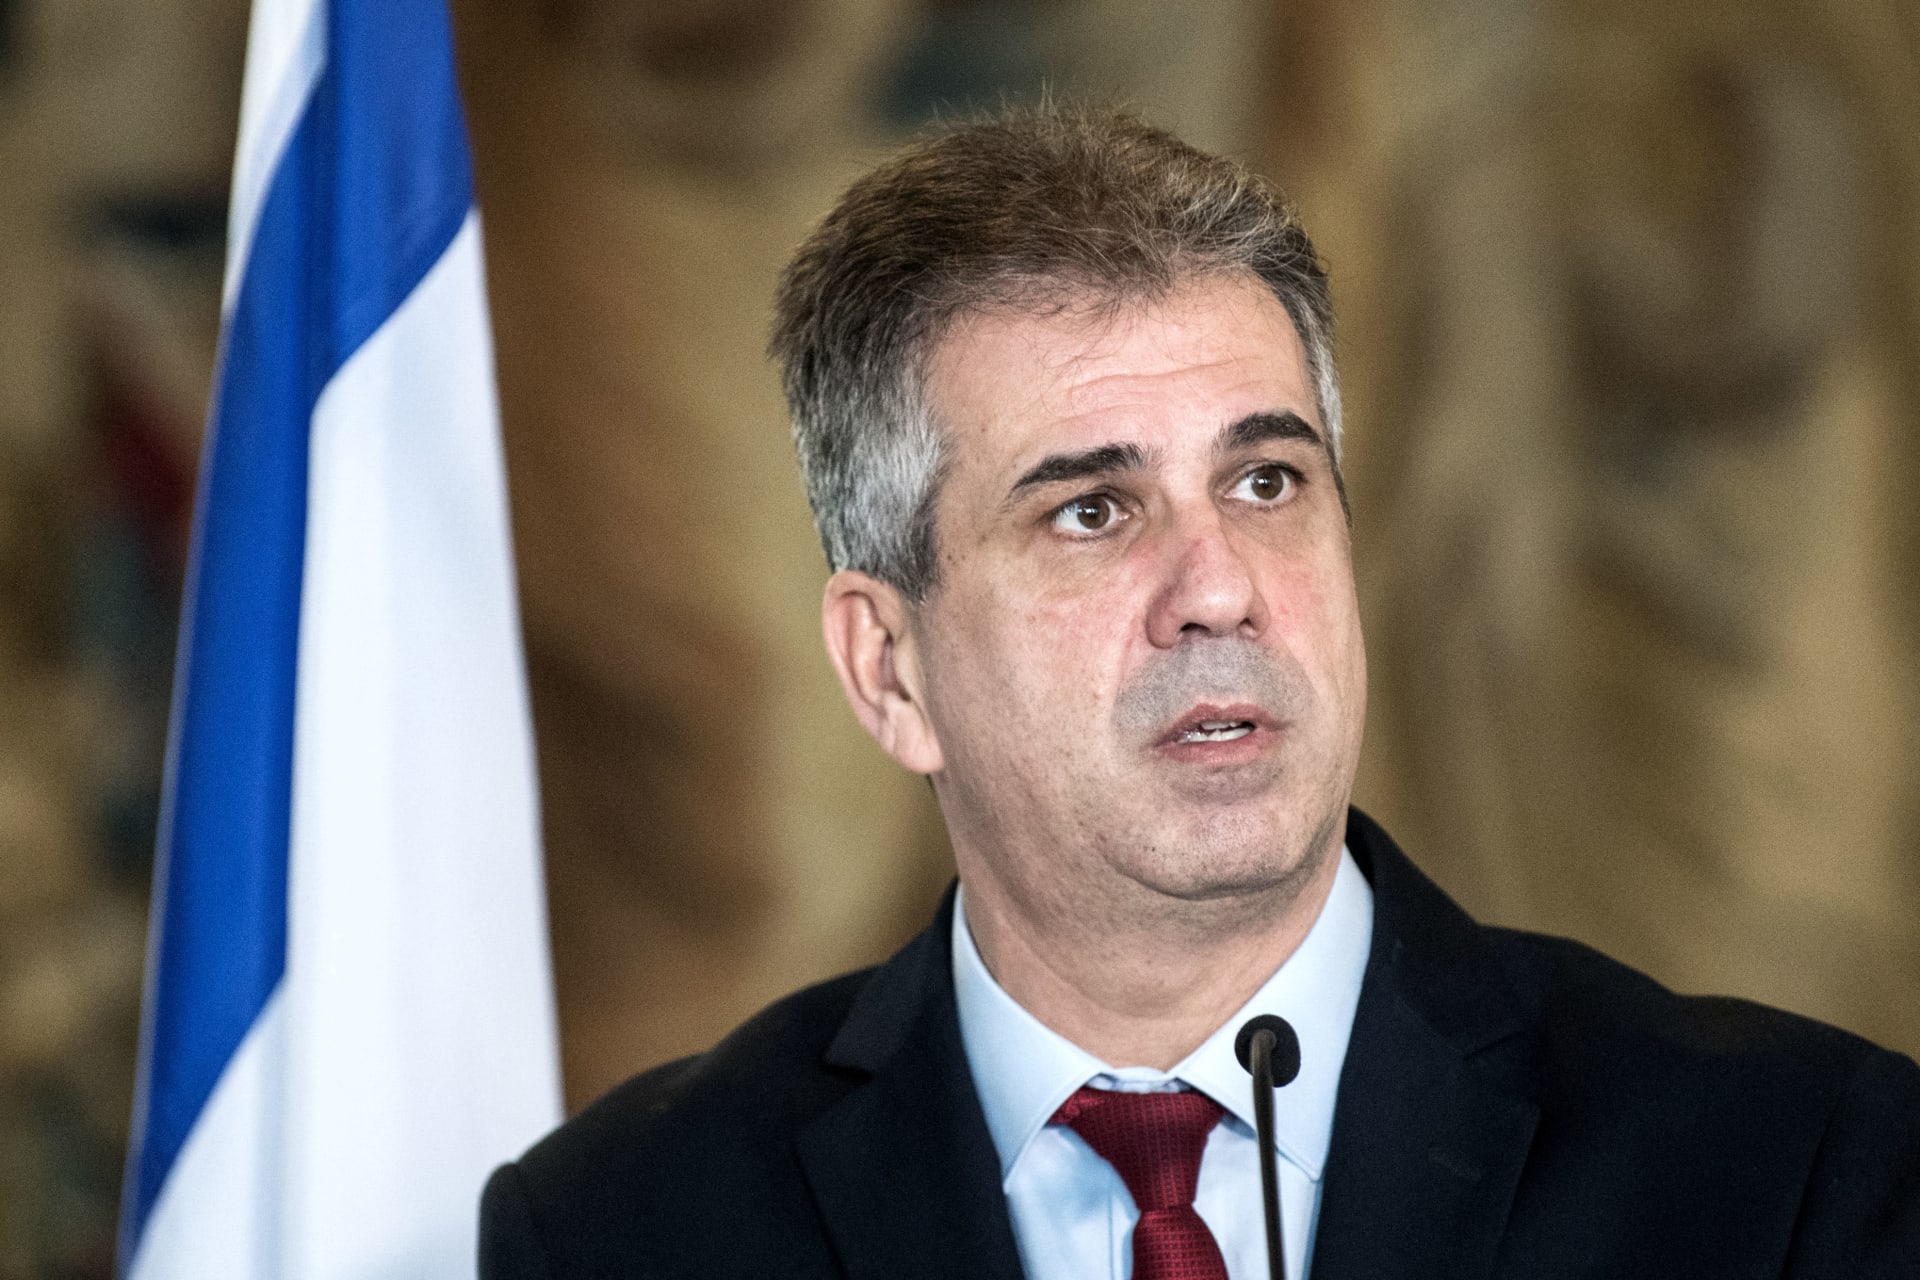 بعد تصريحاتها حول "استقلالية القضاء".. وزير خارجية إسرائيل ردا على هاريس: "هذا شأن داخلي"